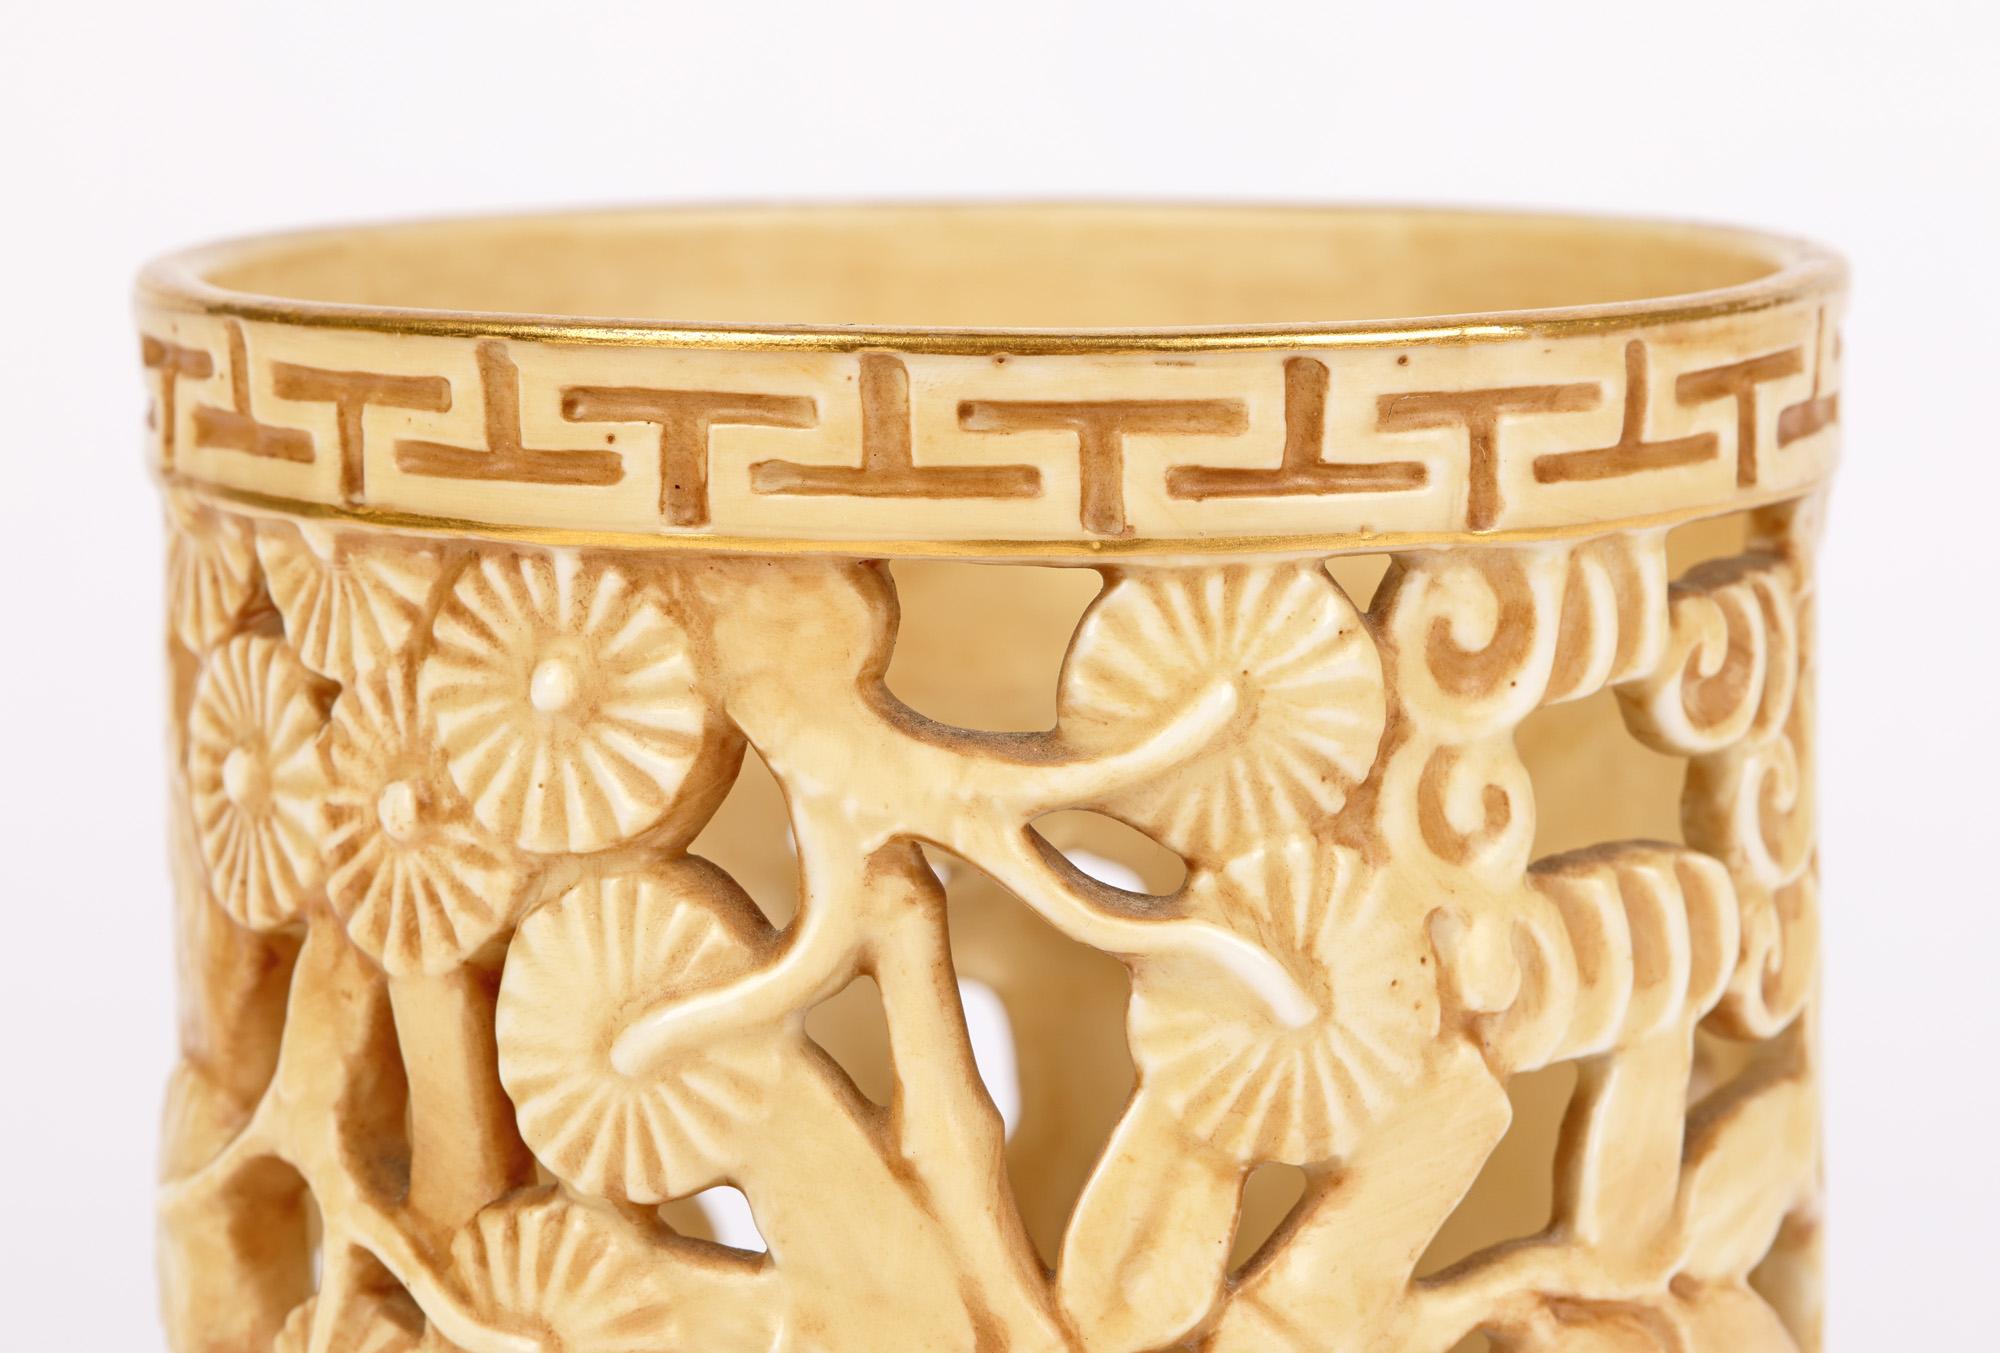 Un inhabituel vase à bec percé en porcelaine Royal Worcester 'Aesthetic Movement' décoré dans le style oriental d'un bâtiment au milieu de bambous, daté de 1907. Le vase, de fabrication légère, est de forme cylindrique large avec une base ronde